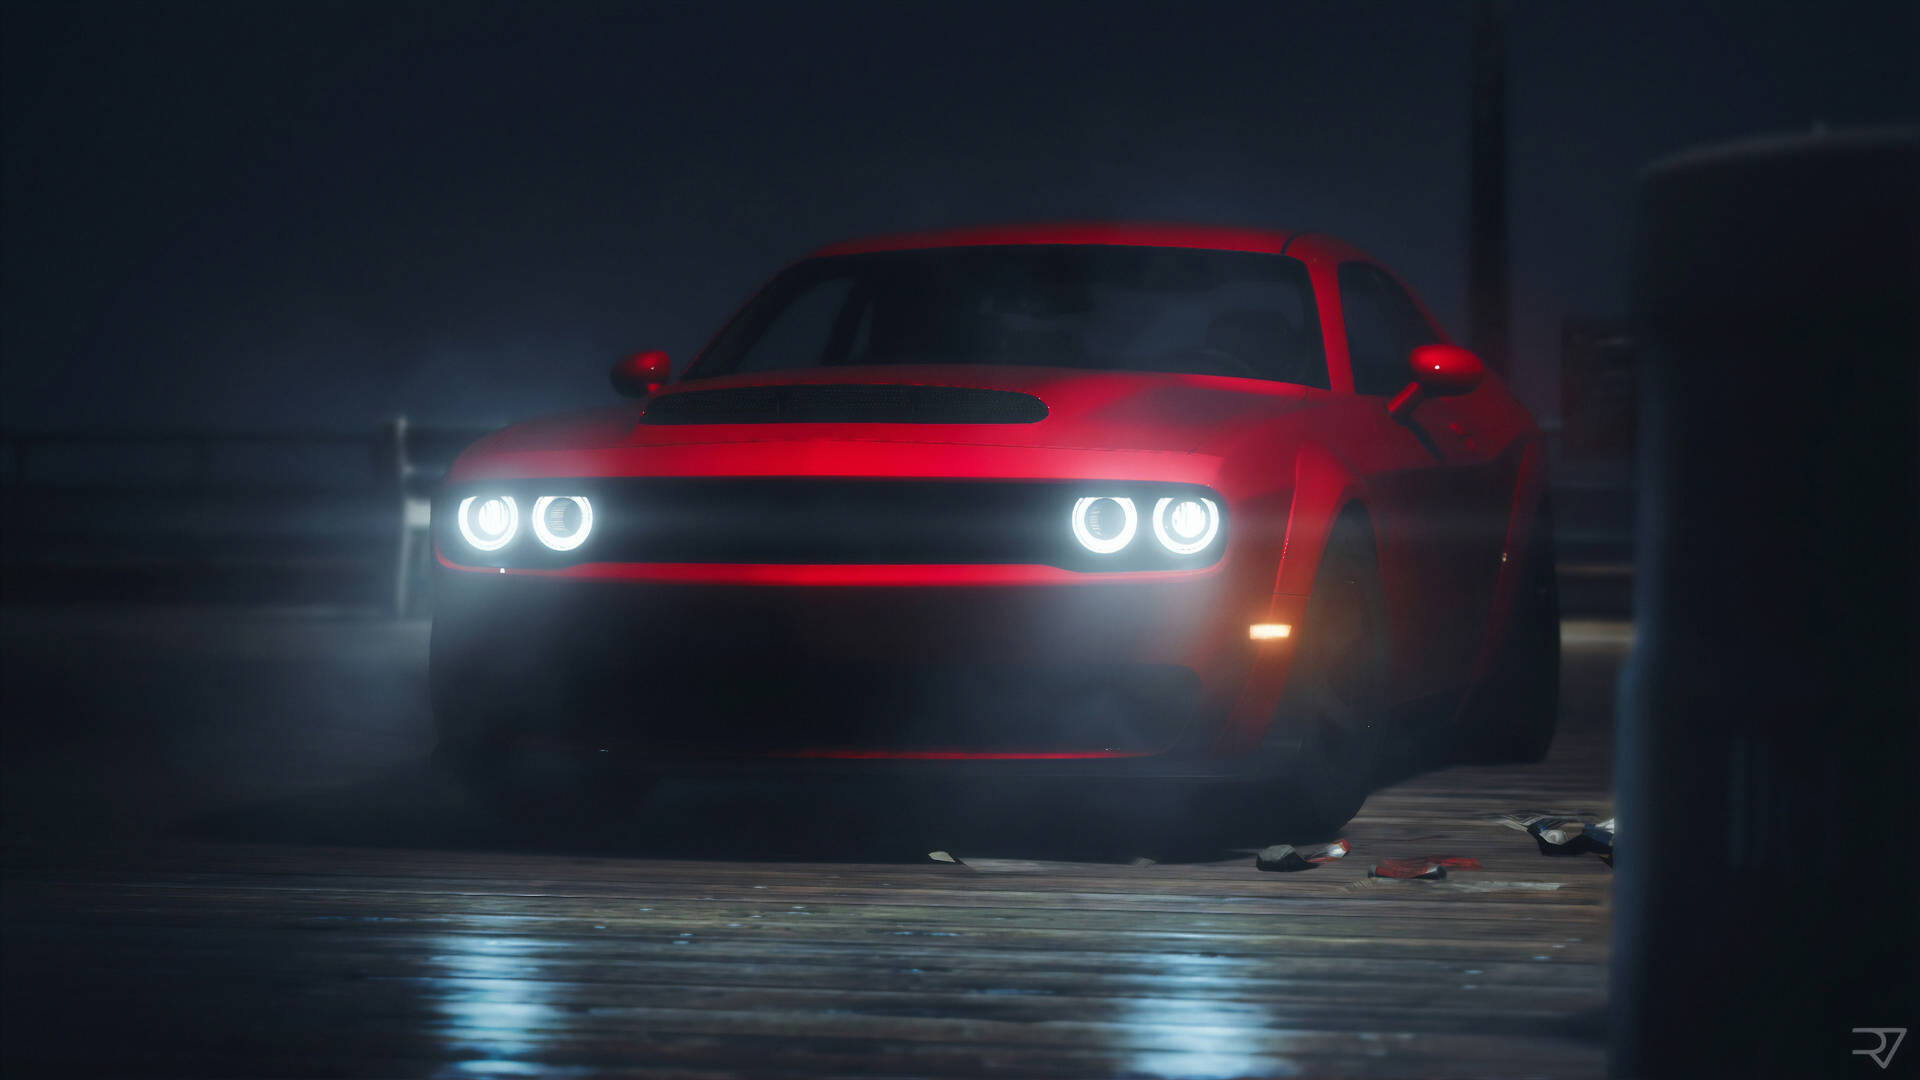 Fundode Tela Do Dodge Challenger Demon Vermelho De 2018 Em 4k. Papel de Parede